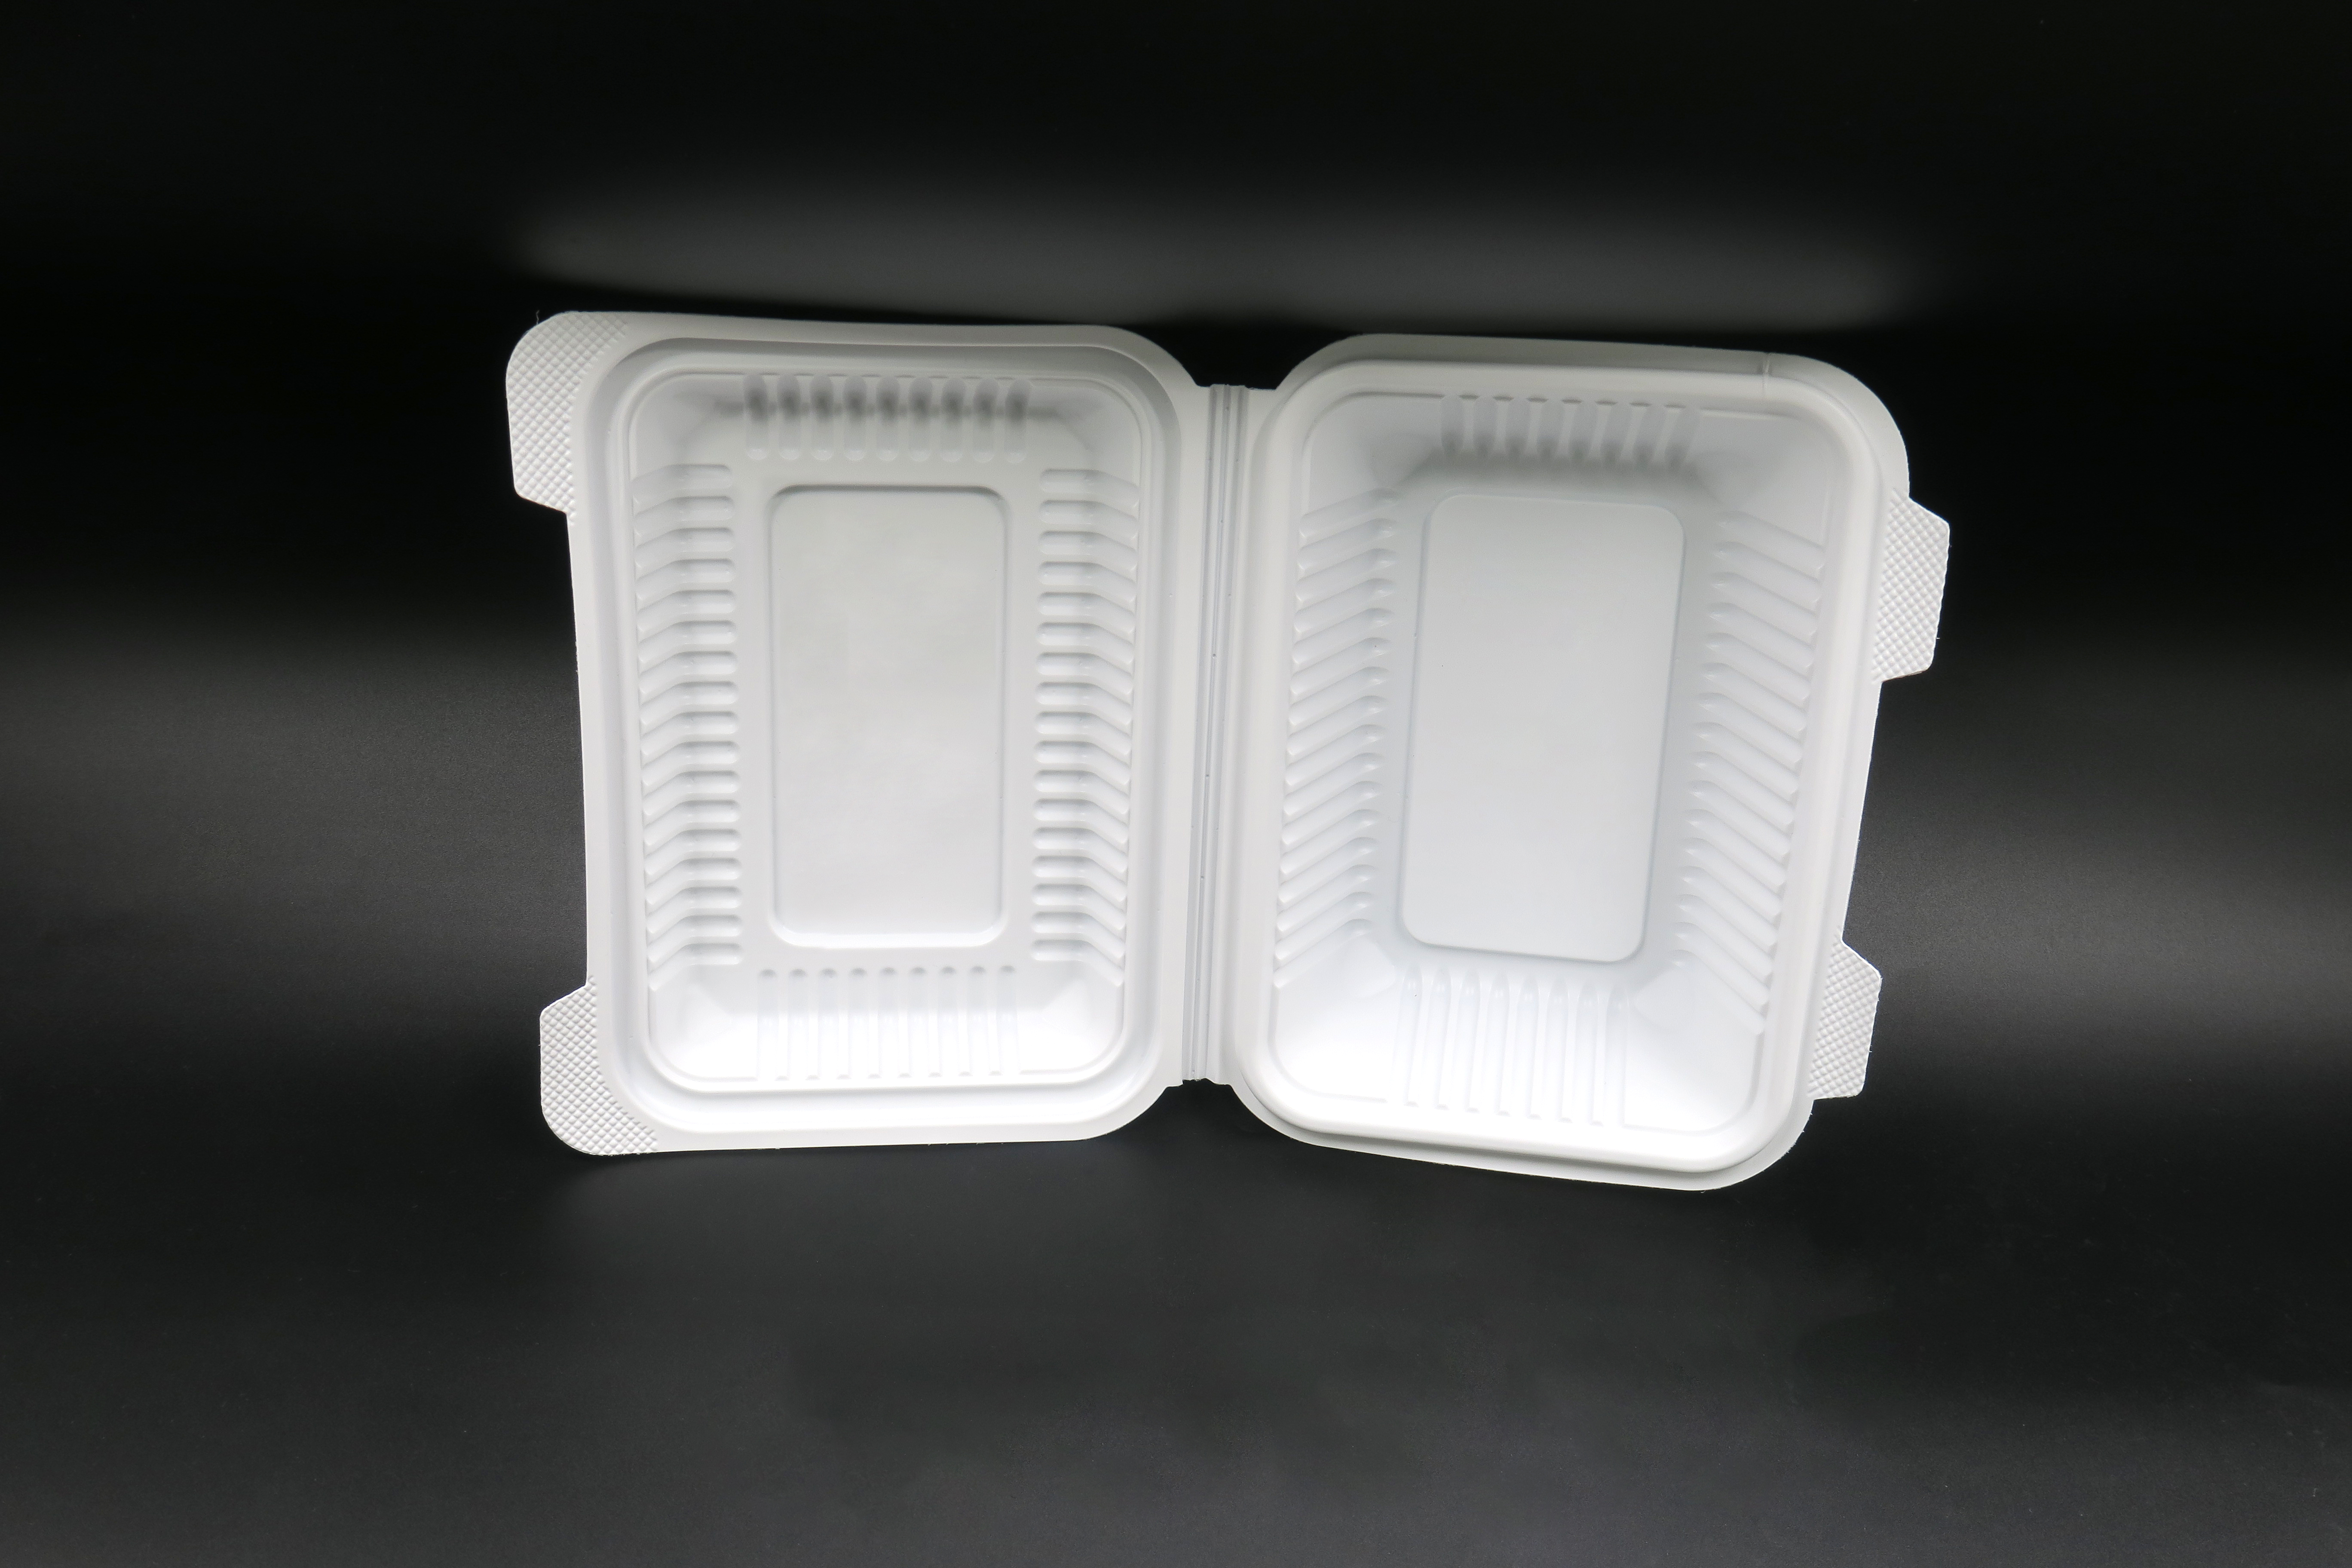 Cajas de paquetes para microondas para restaurantes saludables y ecológicas